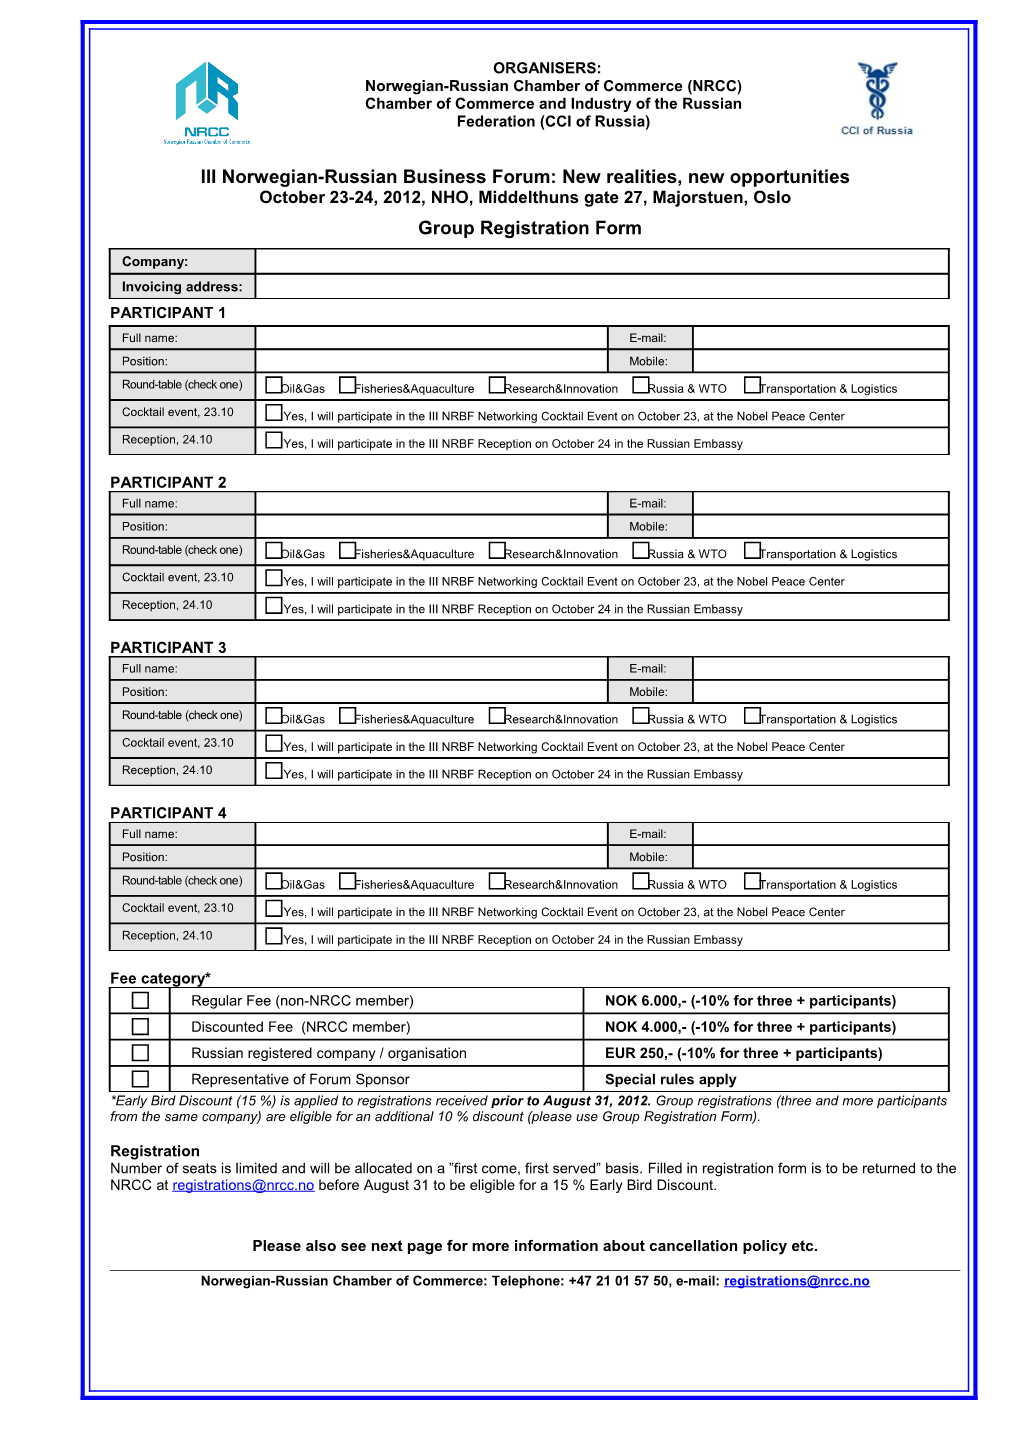 Group Registration Form s1